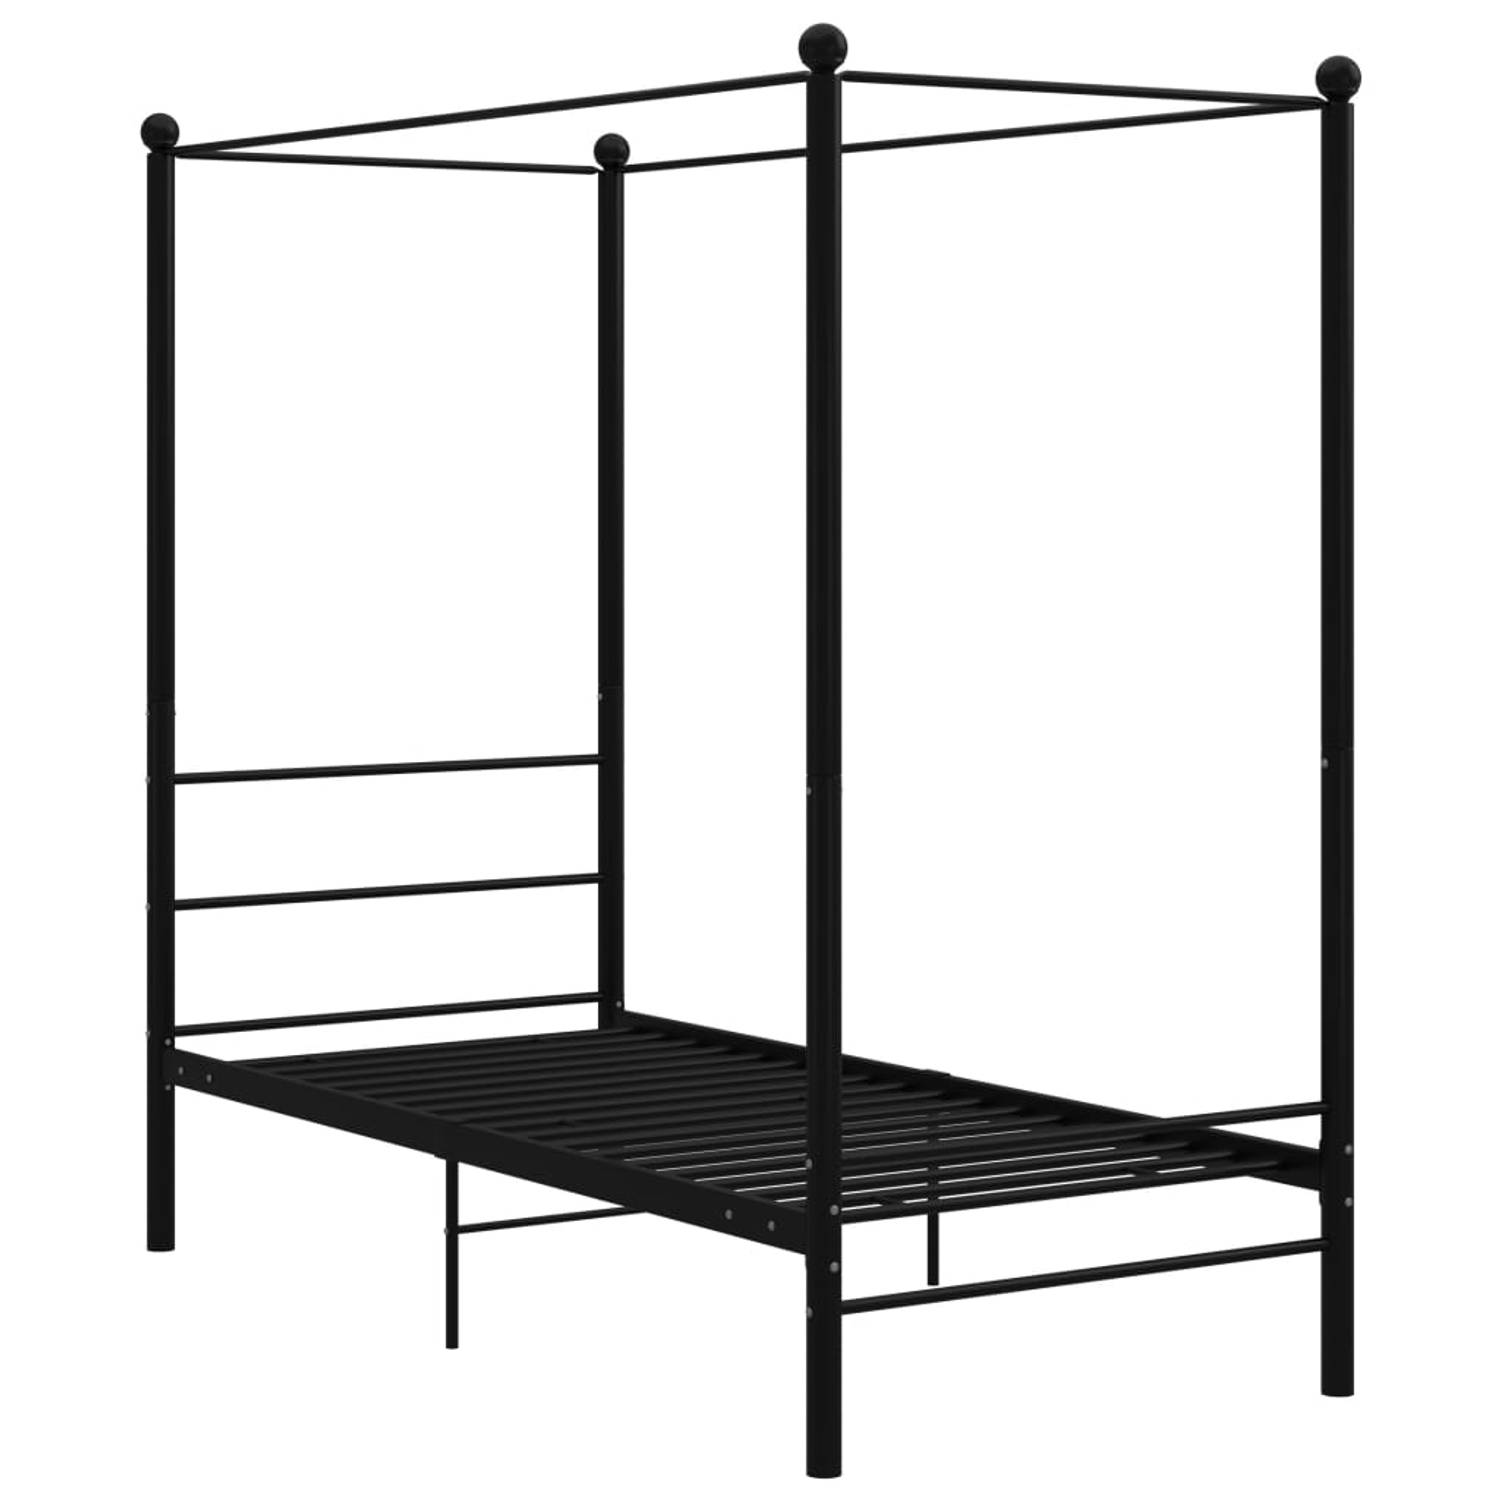 The Living Store Hemelbedframe metaal zwart 90x200 cm - Bedframe - Bedframe - Bed Frame - Bed Frames - Bed - Bedden - Metalen Bedframe - Metalen Bedframes - 1-persoonsbed - 1